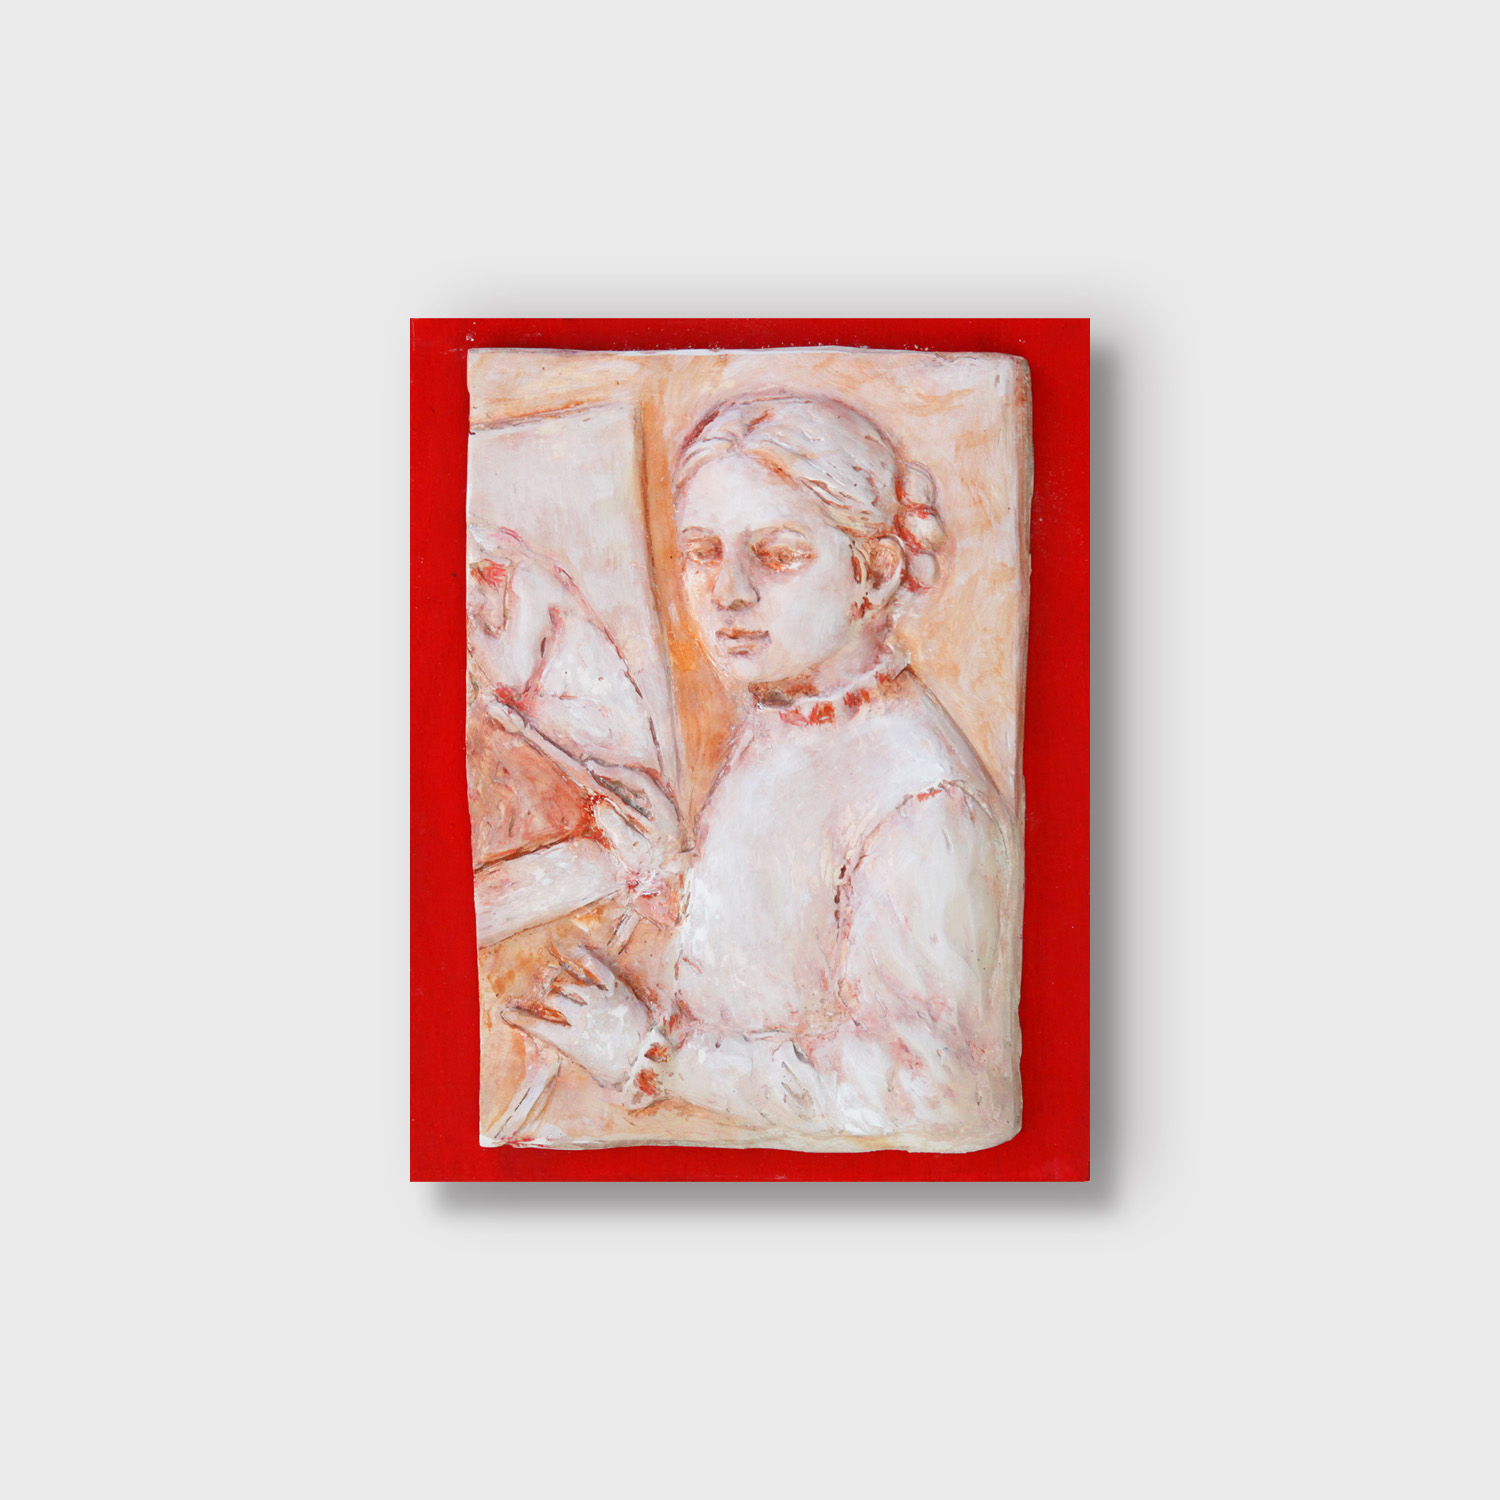 Renaissance women, painting Renaissance women - Sofonisba